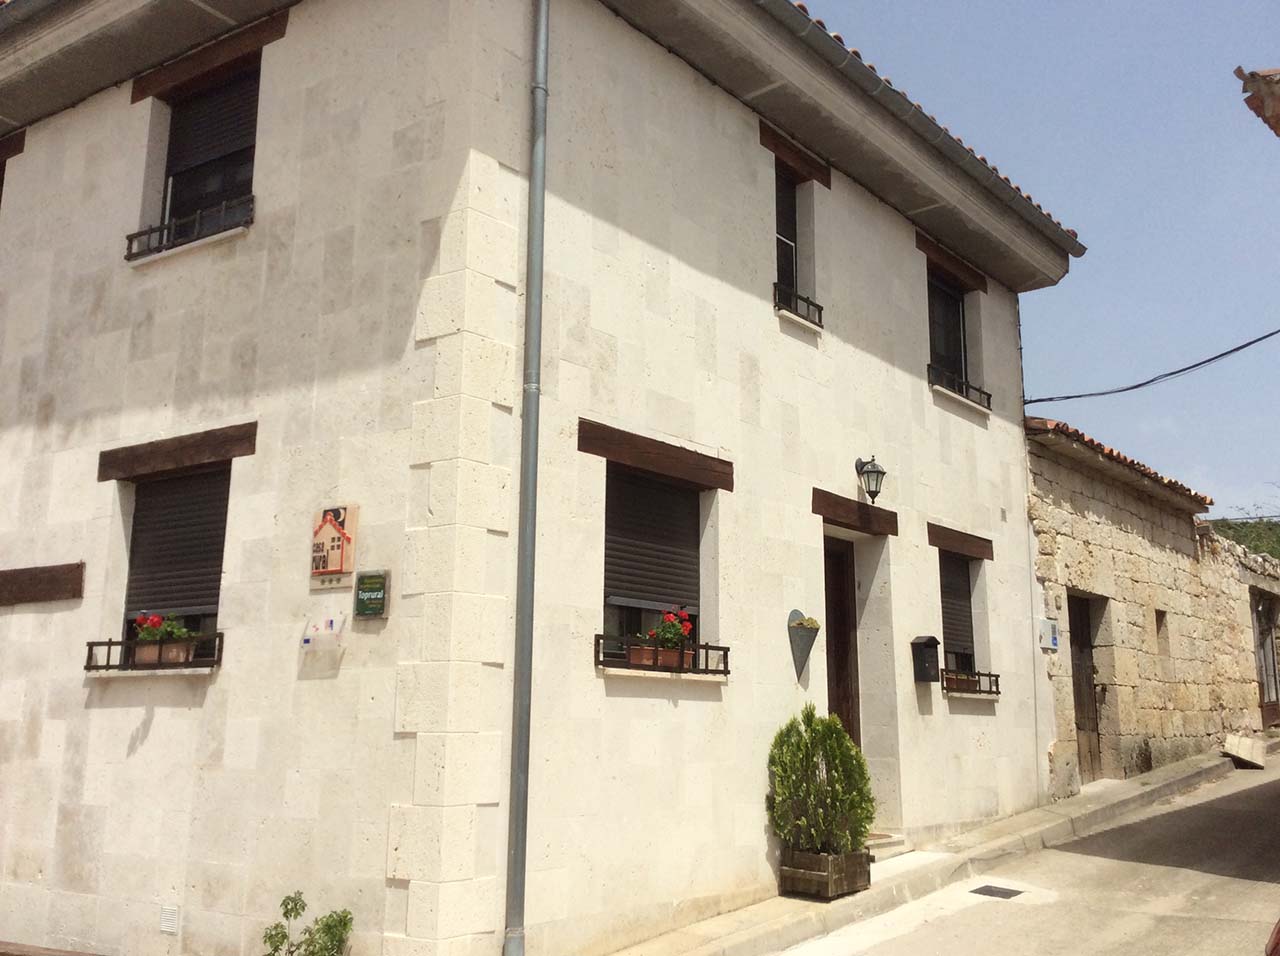 Alquiler de casa rural para cuatro personas en Castrillo del Val, Burgos